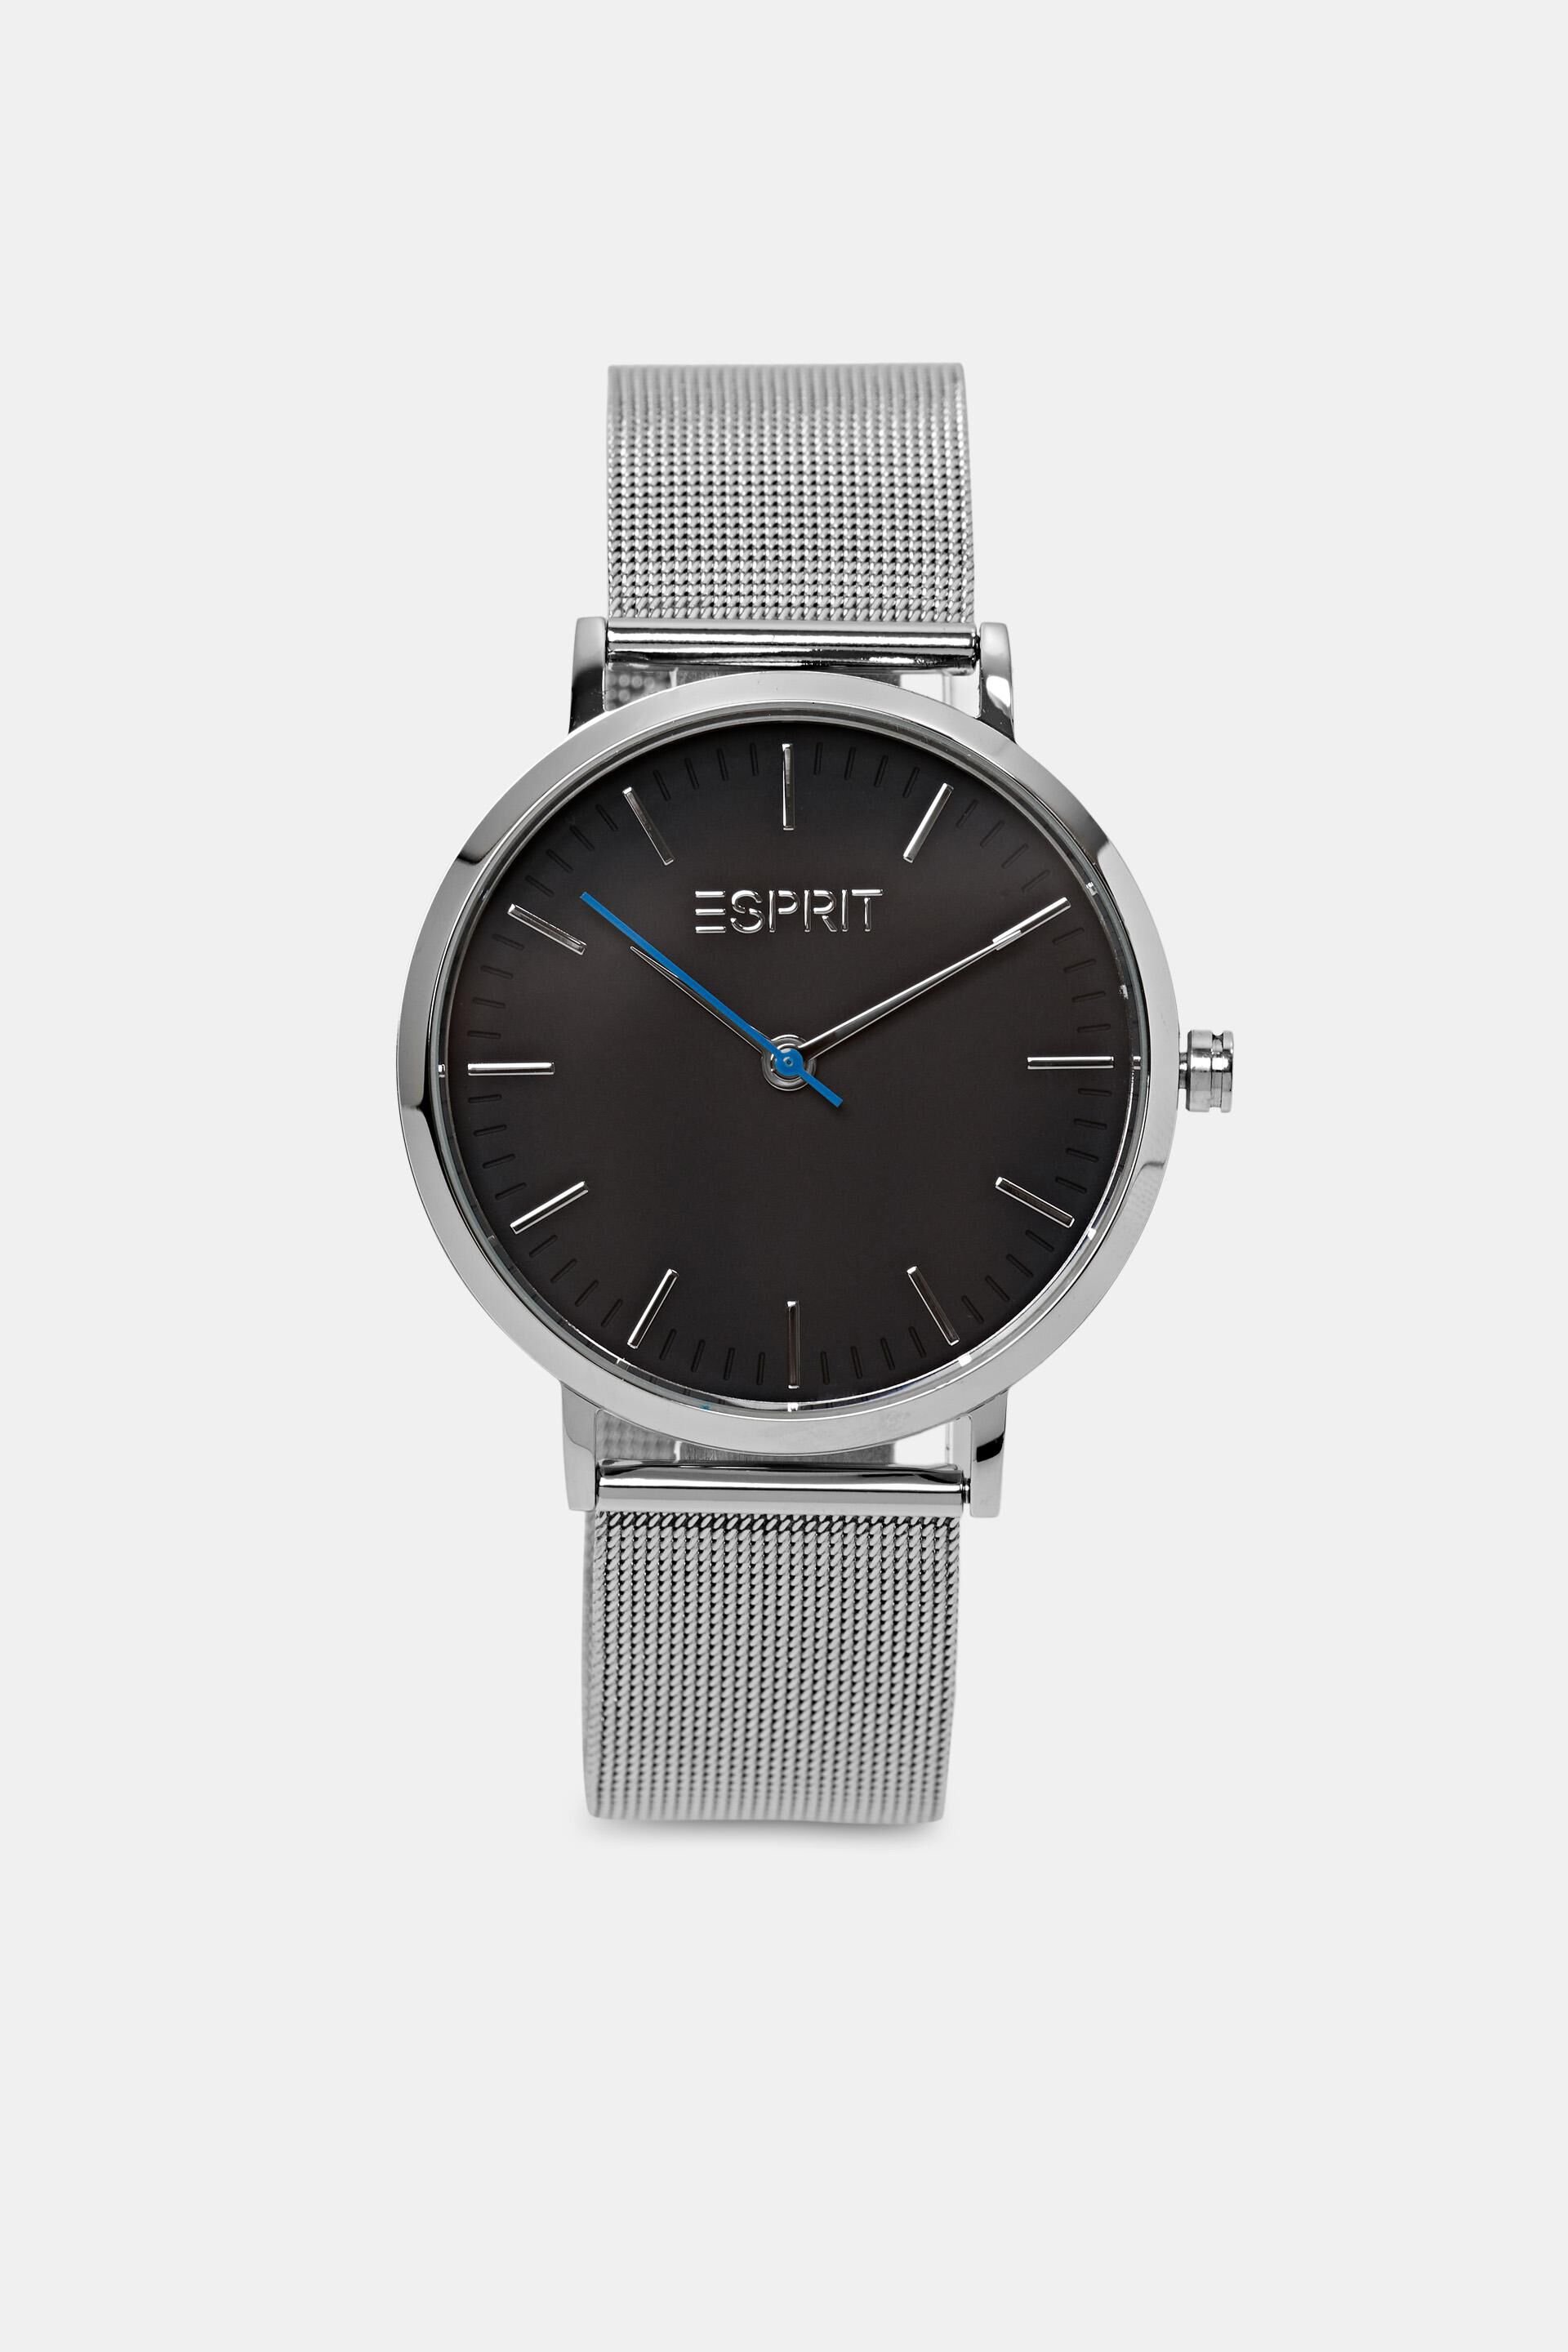 Esprit Mesh Strap Watch Stainless Steel